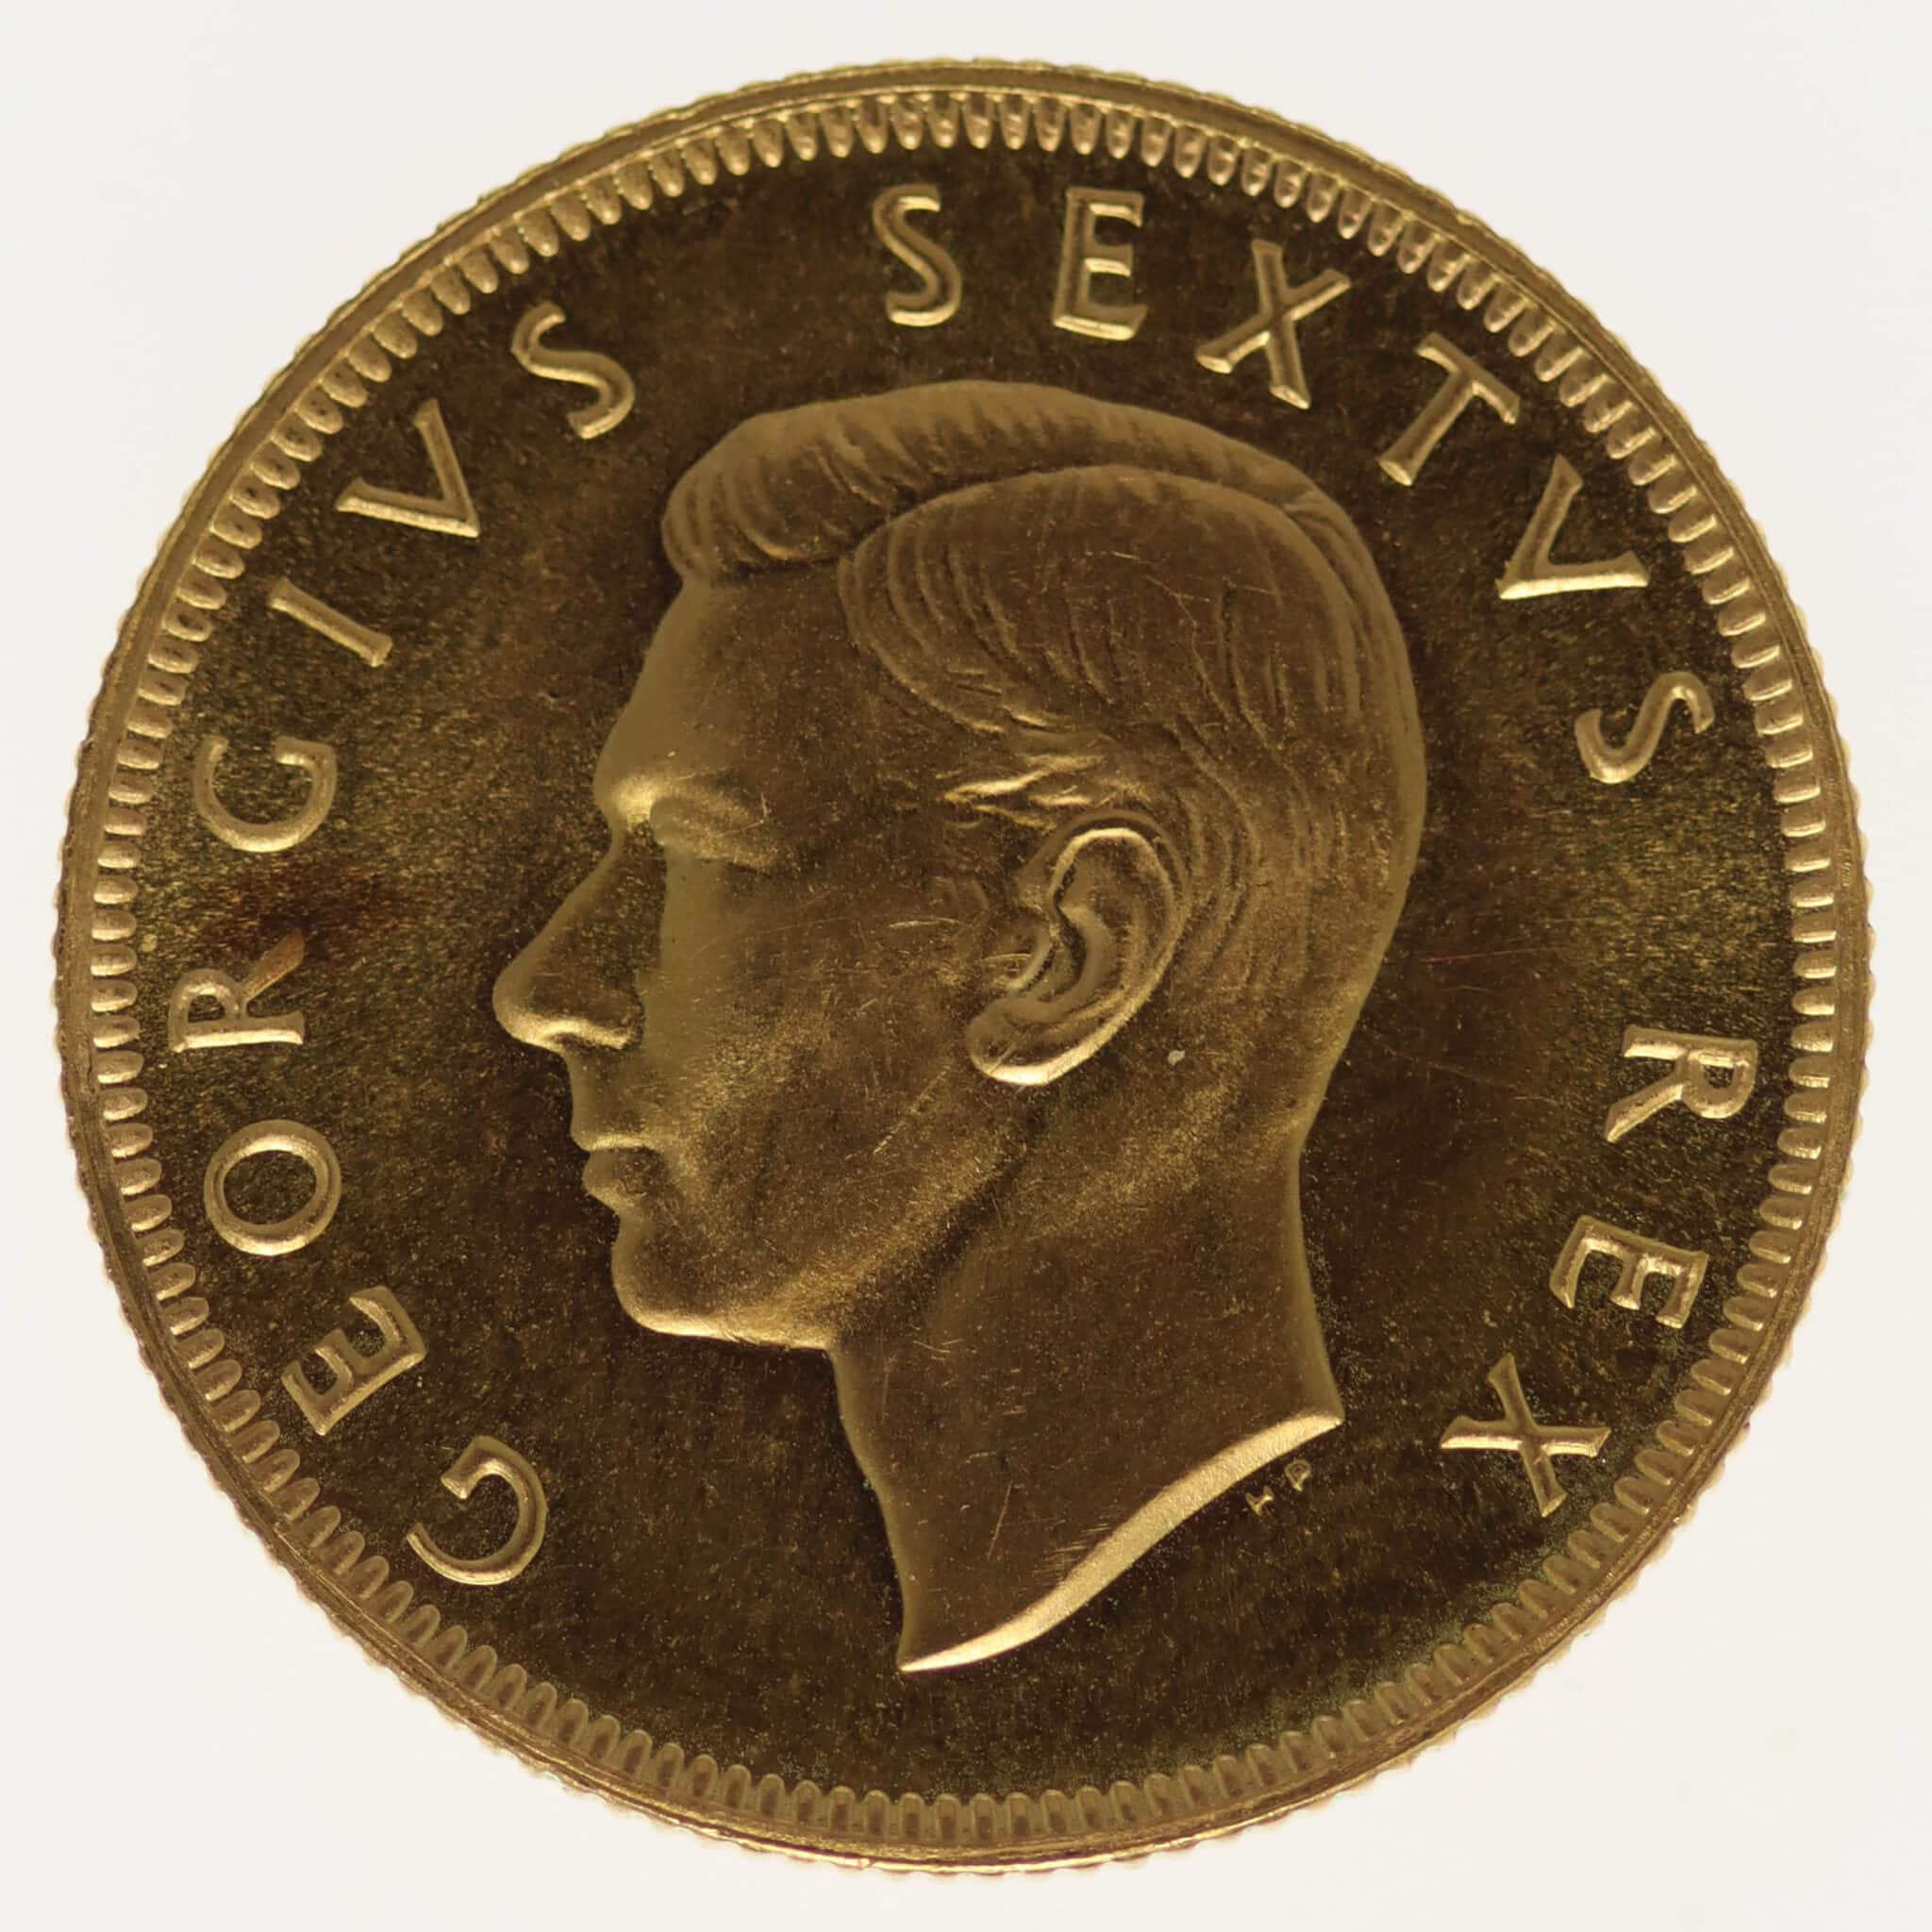 suedafrika - Südafrika Georg VI. Pound 1952